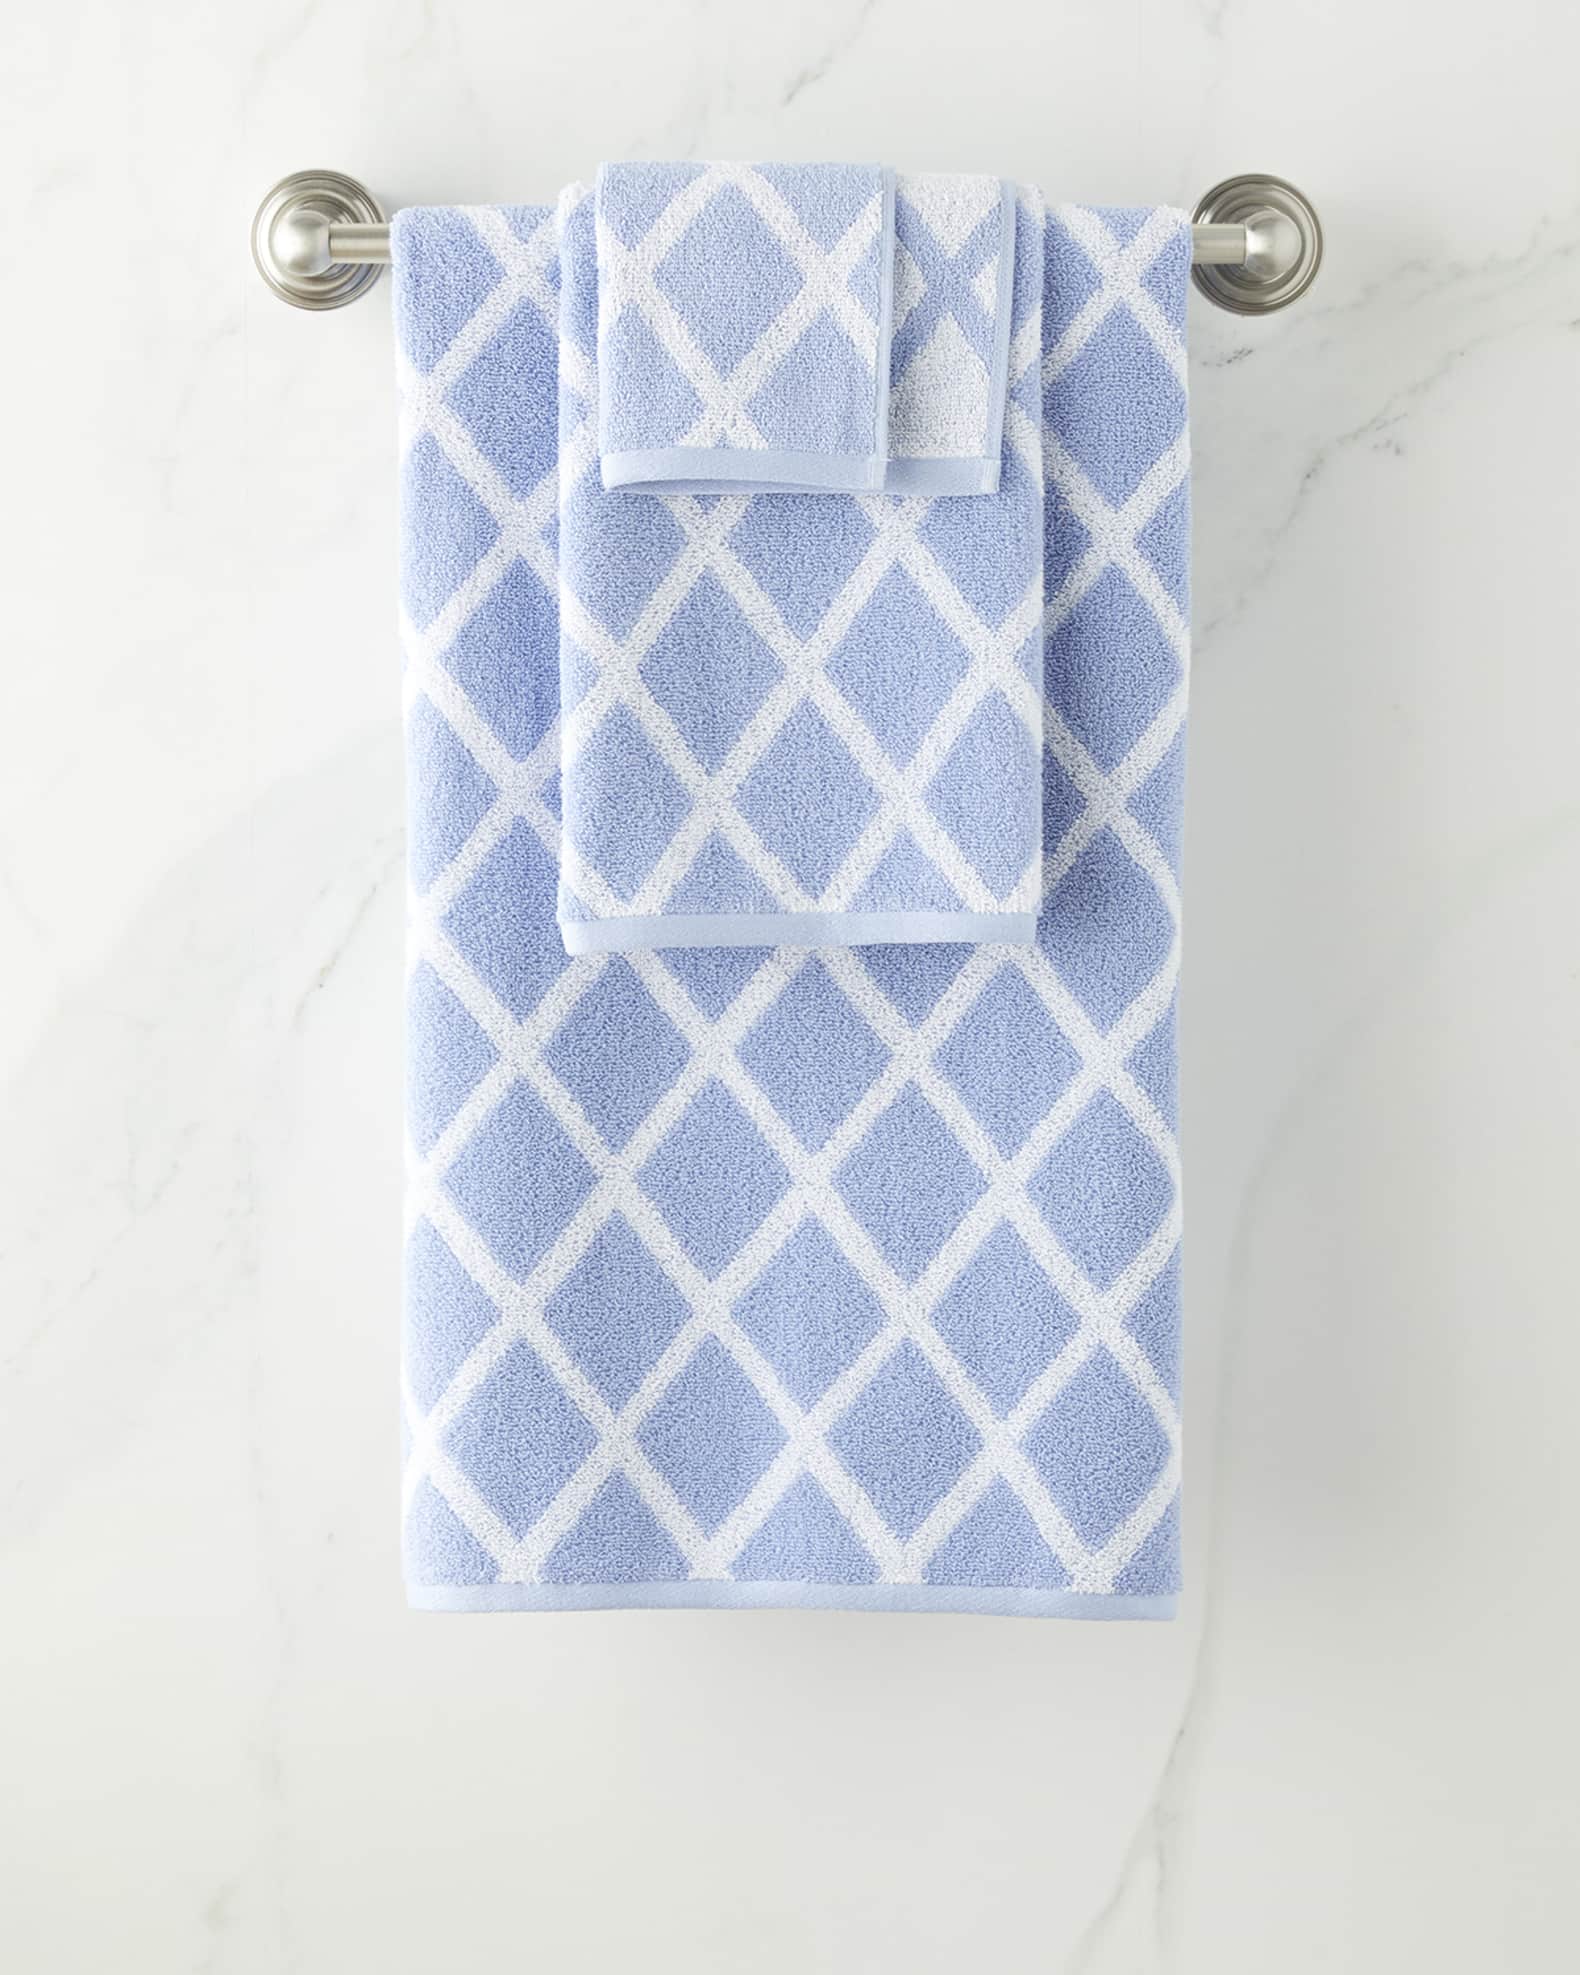 Lauren Ralph Lauren Sanders Antimicrobial Bath Towel